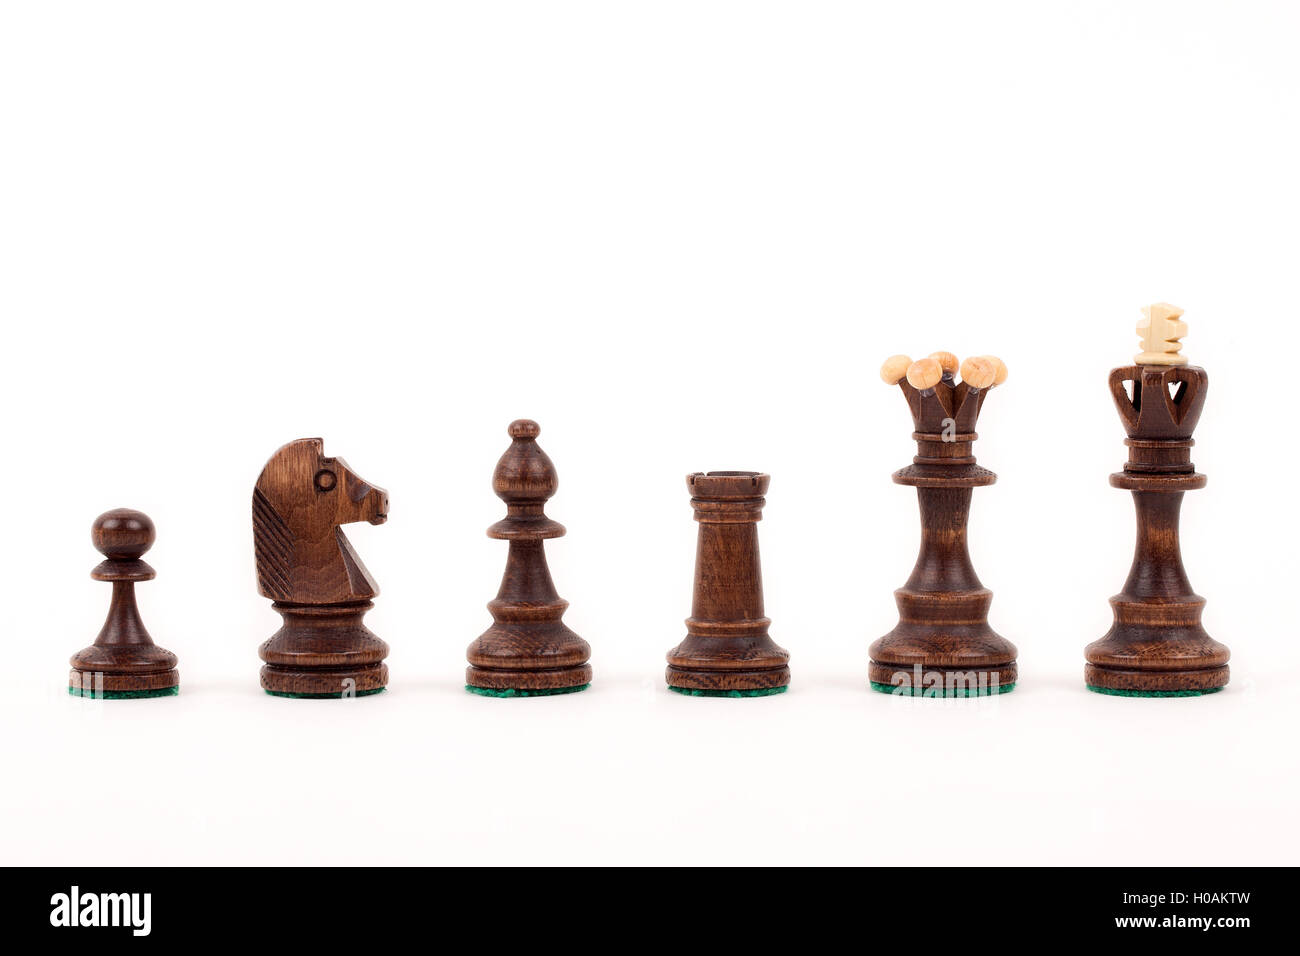 Brown Wooden Chess Stockfotos und -bilder Kaufen - Alamy